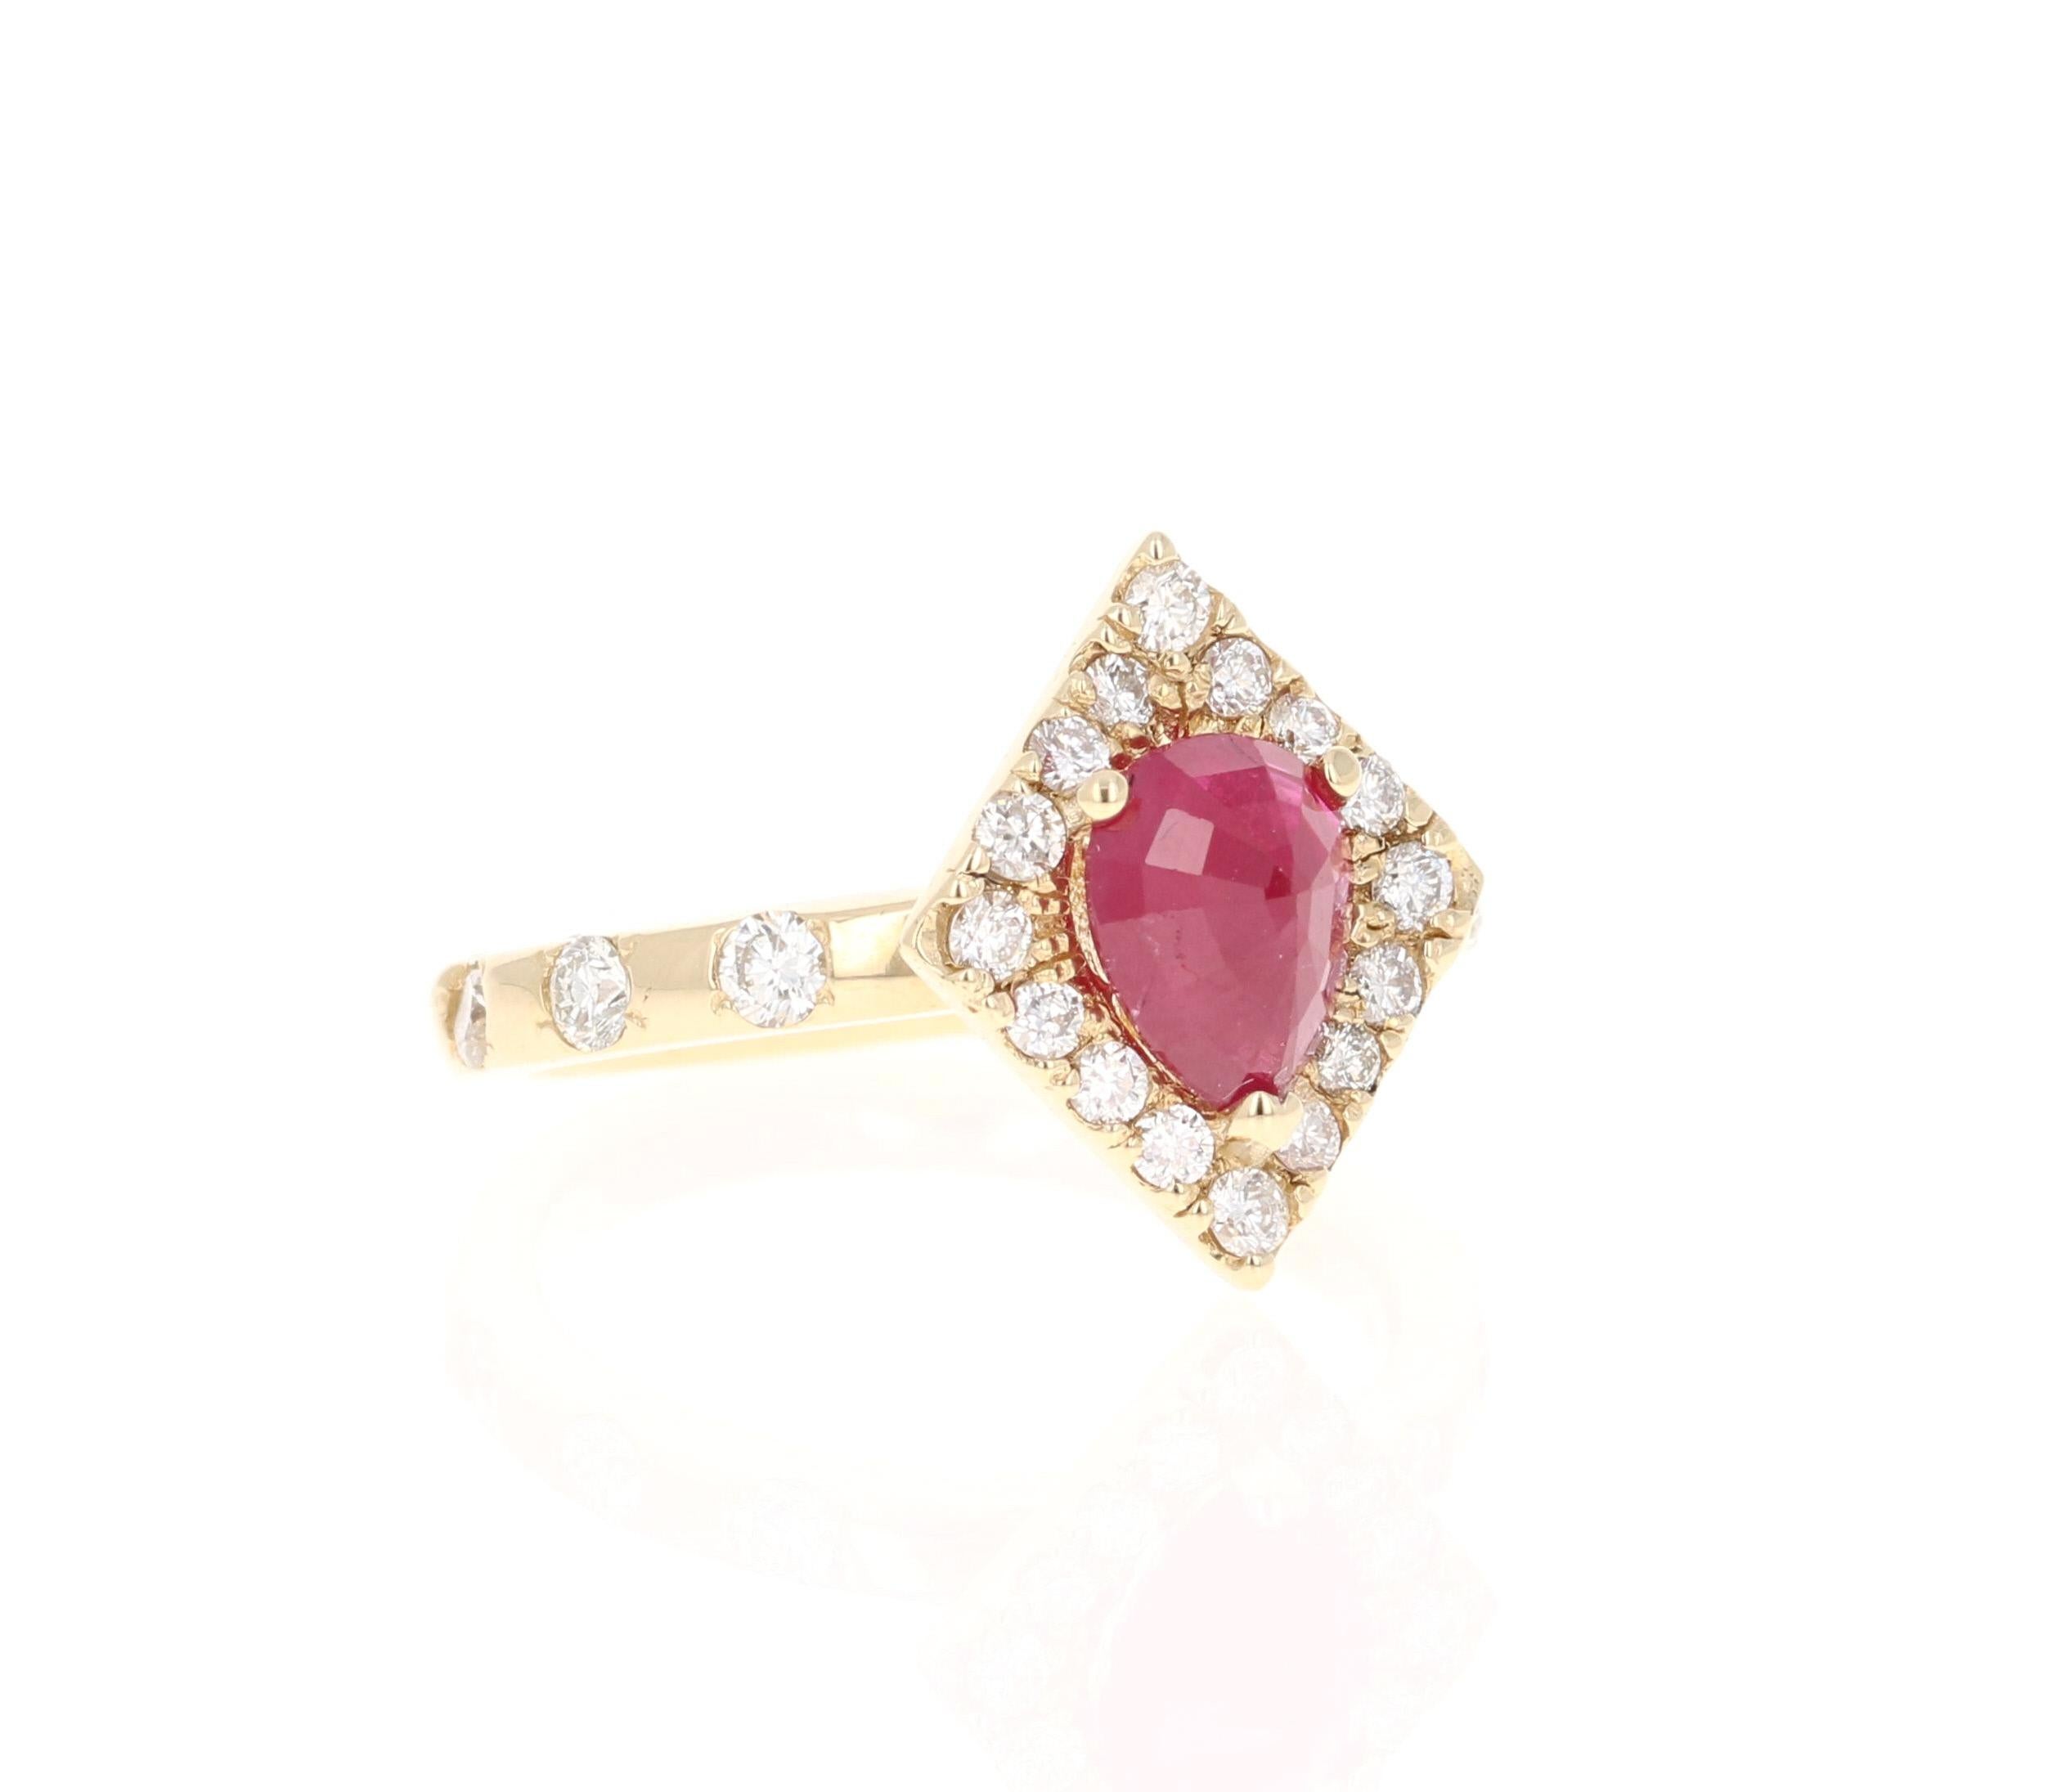 Dieser Ring ist wirklich eine Schönheit und kann leicht in einen einzigartigen Verlobungs- oder Brautring verwandelt werden!
Ein Rubin im Birnenschliff wiegt 1,47 Karat und ist von 22 Diamanten im Rundschliff umgeben, die 0,67 Karat wiegen. Die